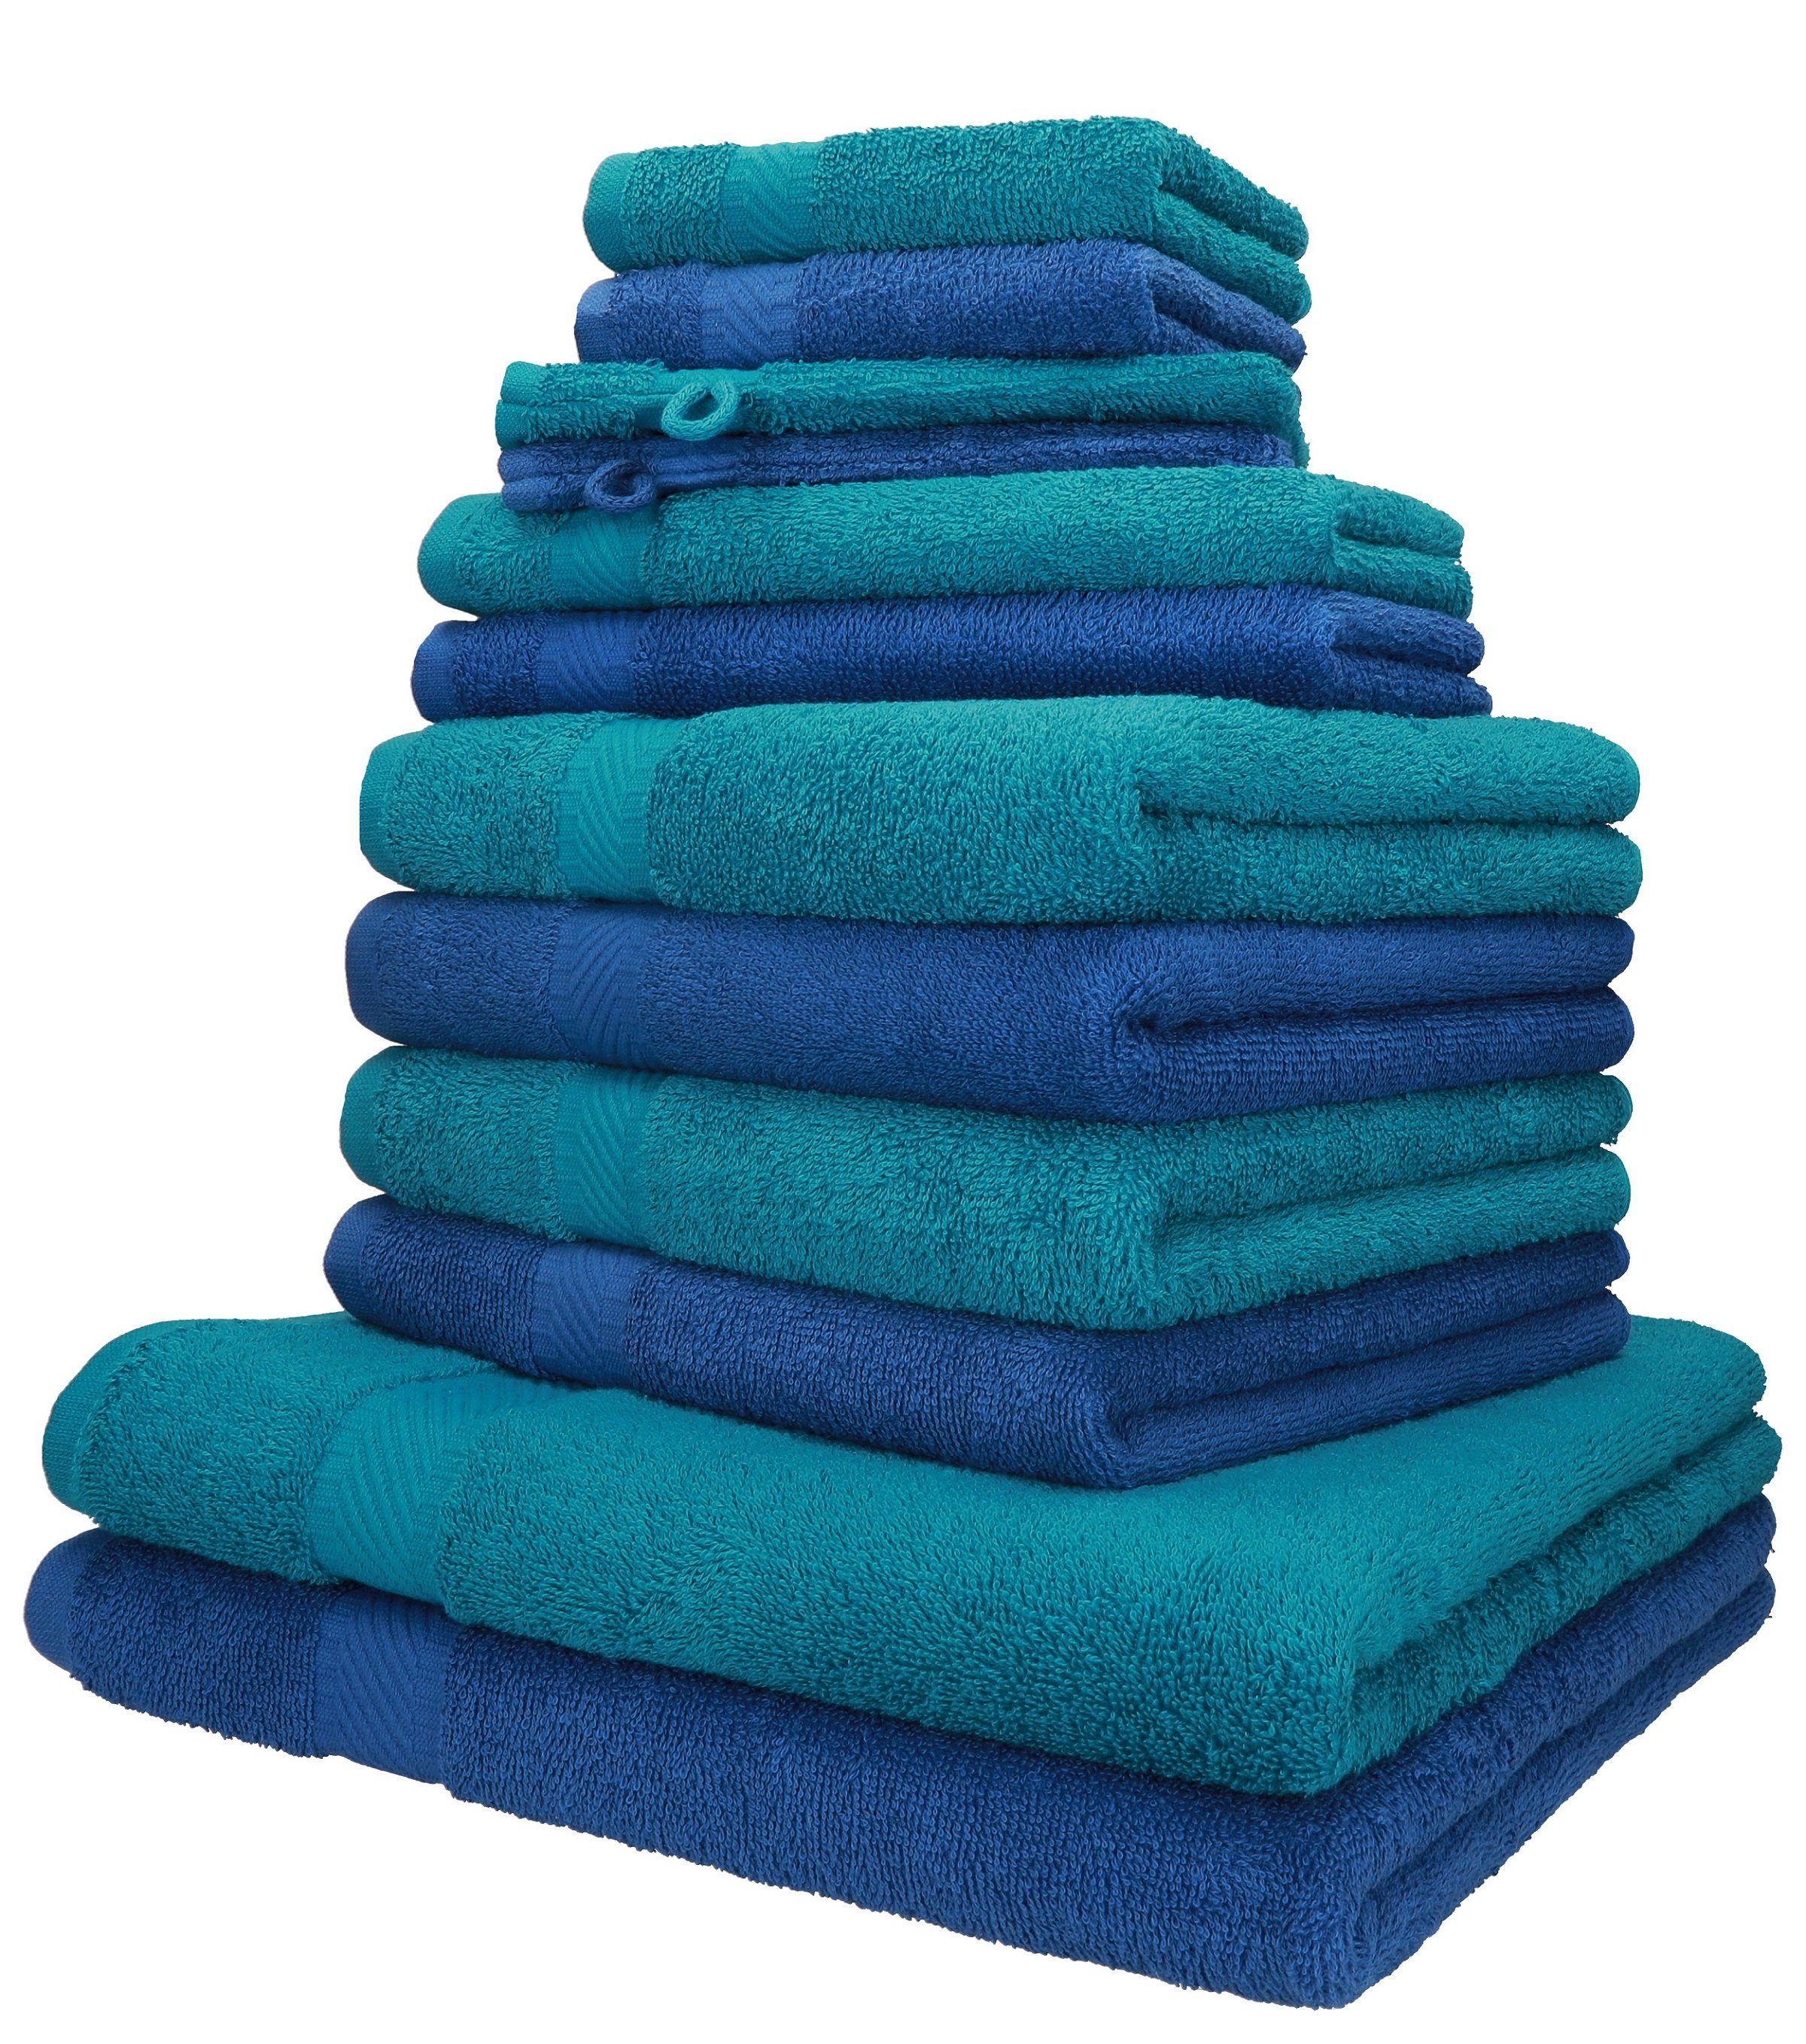 Betz Handtuch Set 12-TLG. Handtuch-Set Palermo 100% Baumwolle 2 Liegetücher 4 Handtücher 2 Gästetücher 2 Seiftücher 2 Waschhandschuhe Farbe blau und Petrol, 100% Baumwolle, (12-tlg)